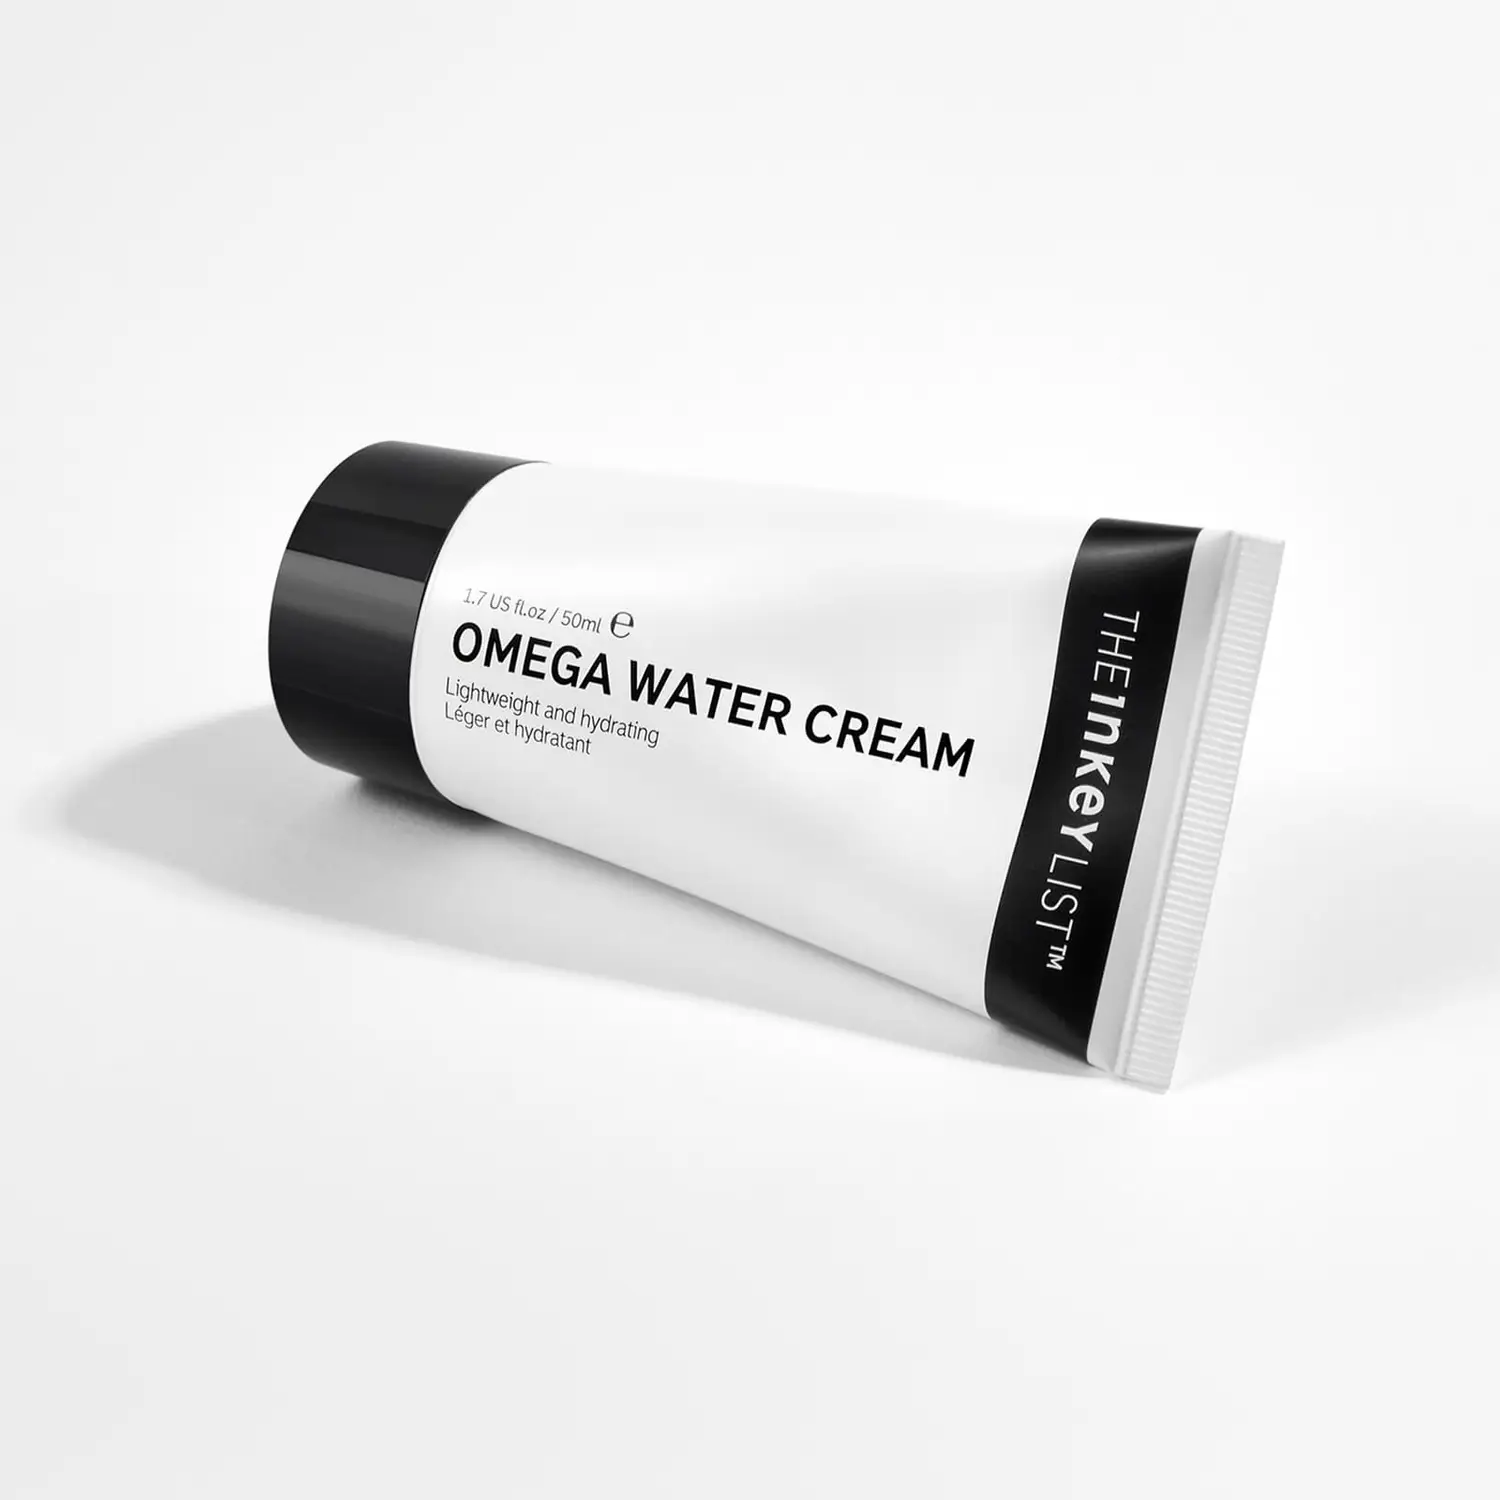 THE INKEY LIST Omega Water Cream